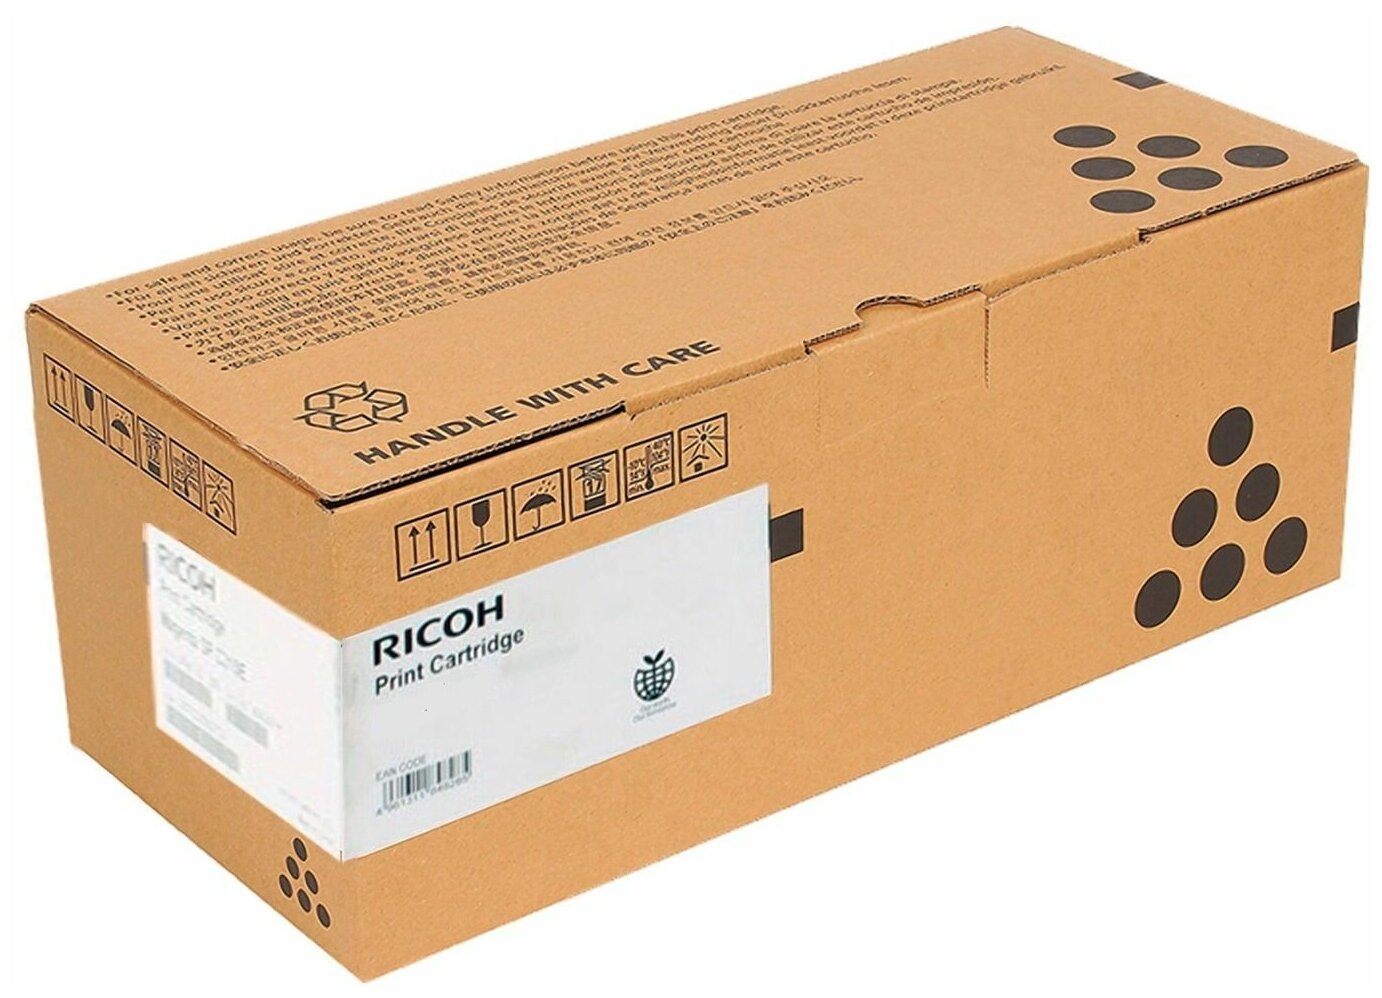 Драм-картридж Ricoh SP4500 (407324) для SP 3600/3610/4510